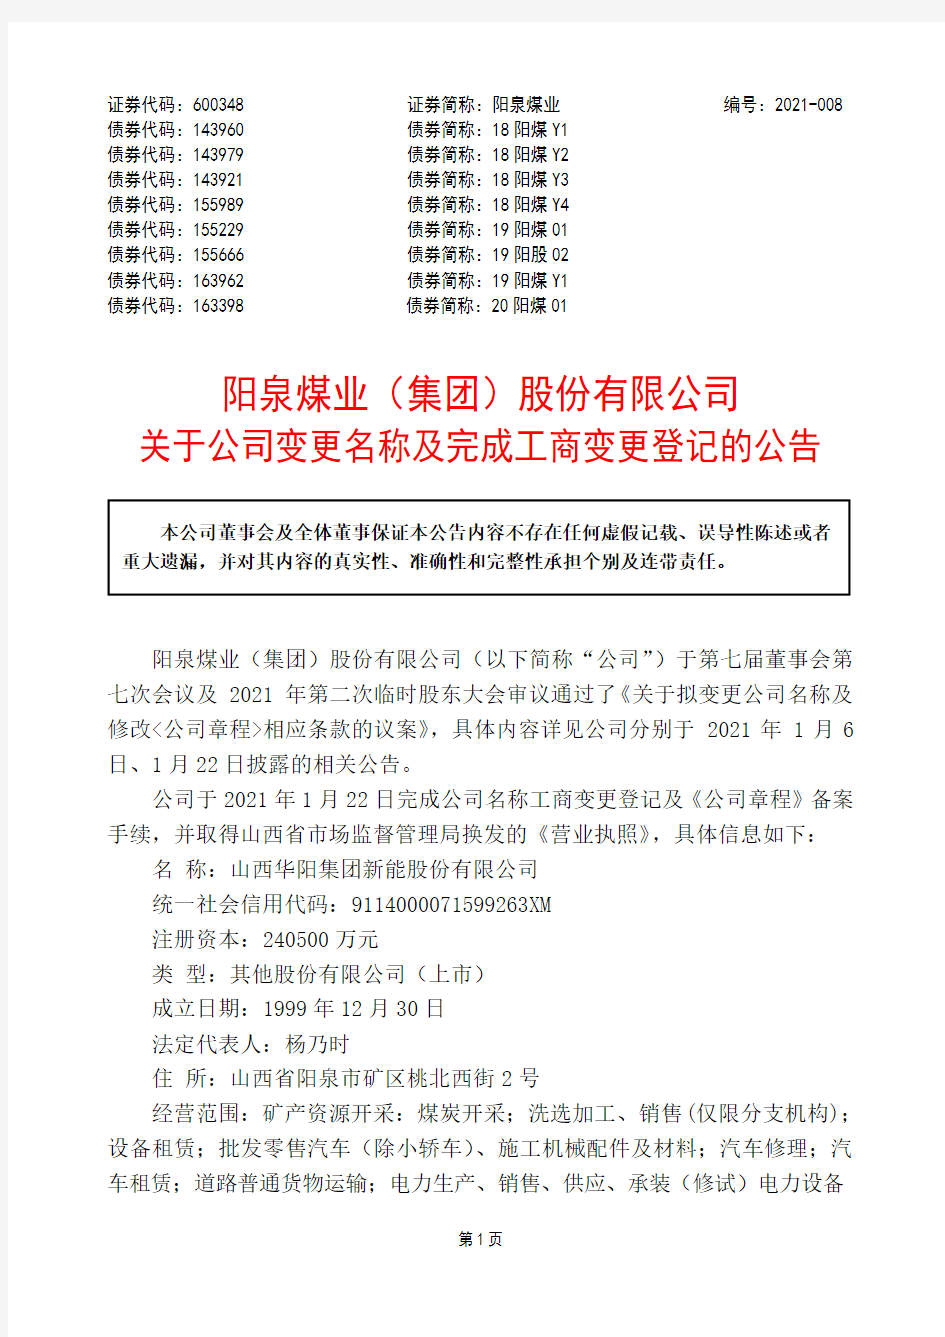 600348阳泉煤业(集团)股份有限公司关于公司变更名称及完成工商变更2021-01-23